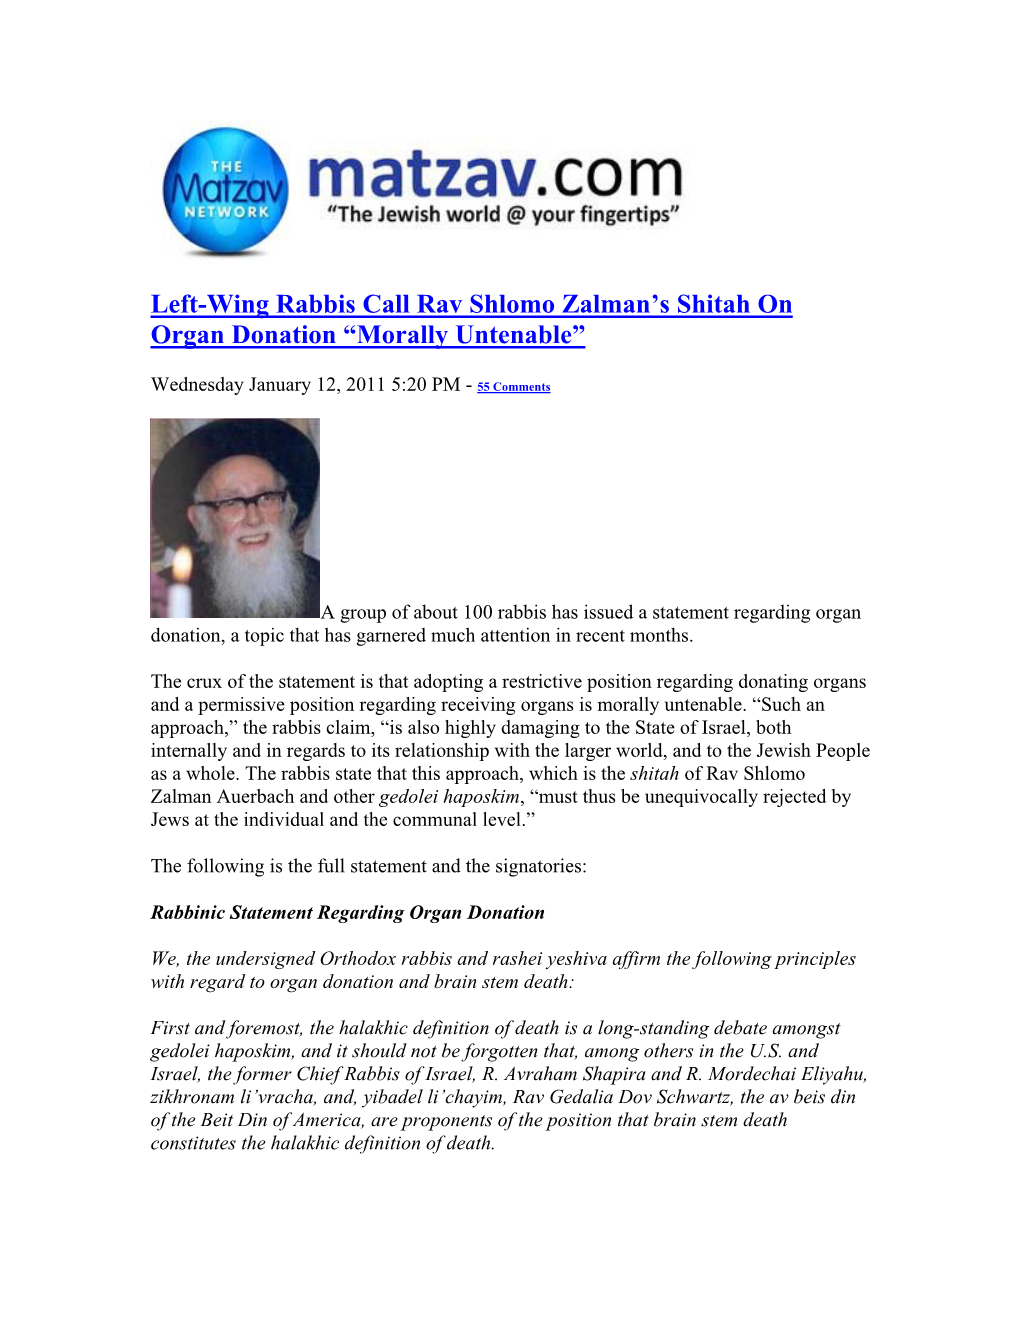 Left-Wing Rabbis Call Rav Shlomo Zalman's Shitah on Organ